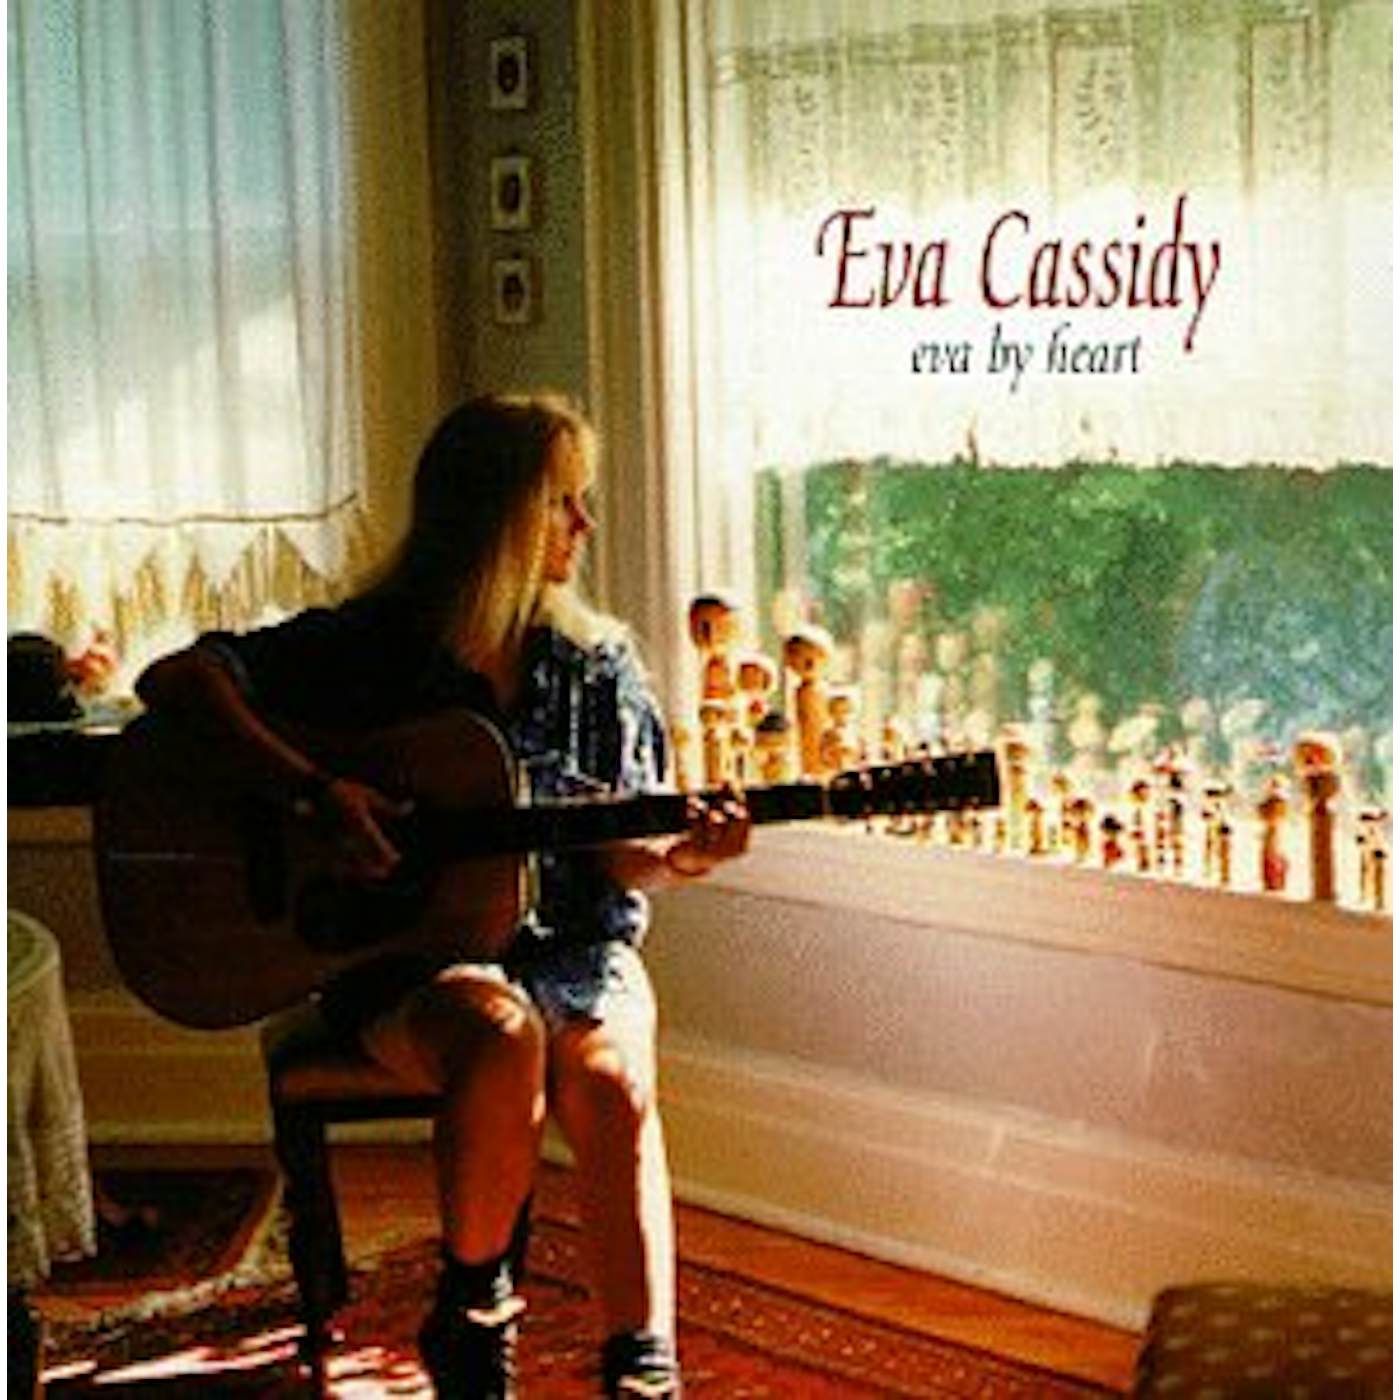 Eva Cassidy EVA BY HEART CD